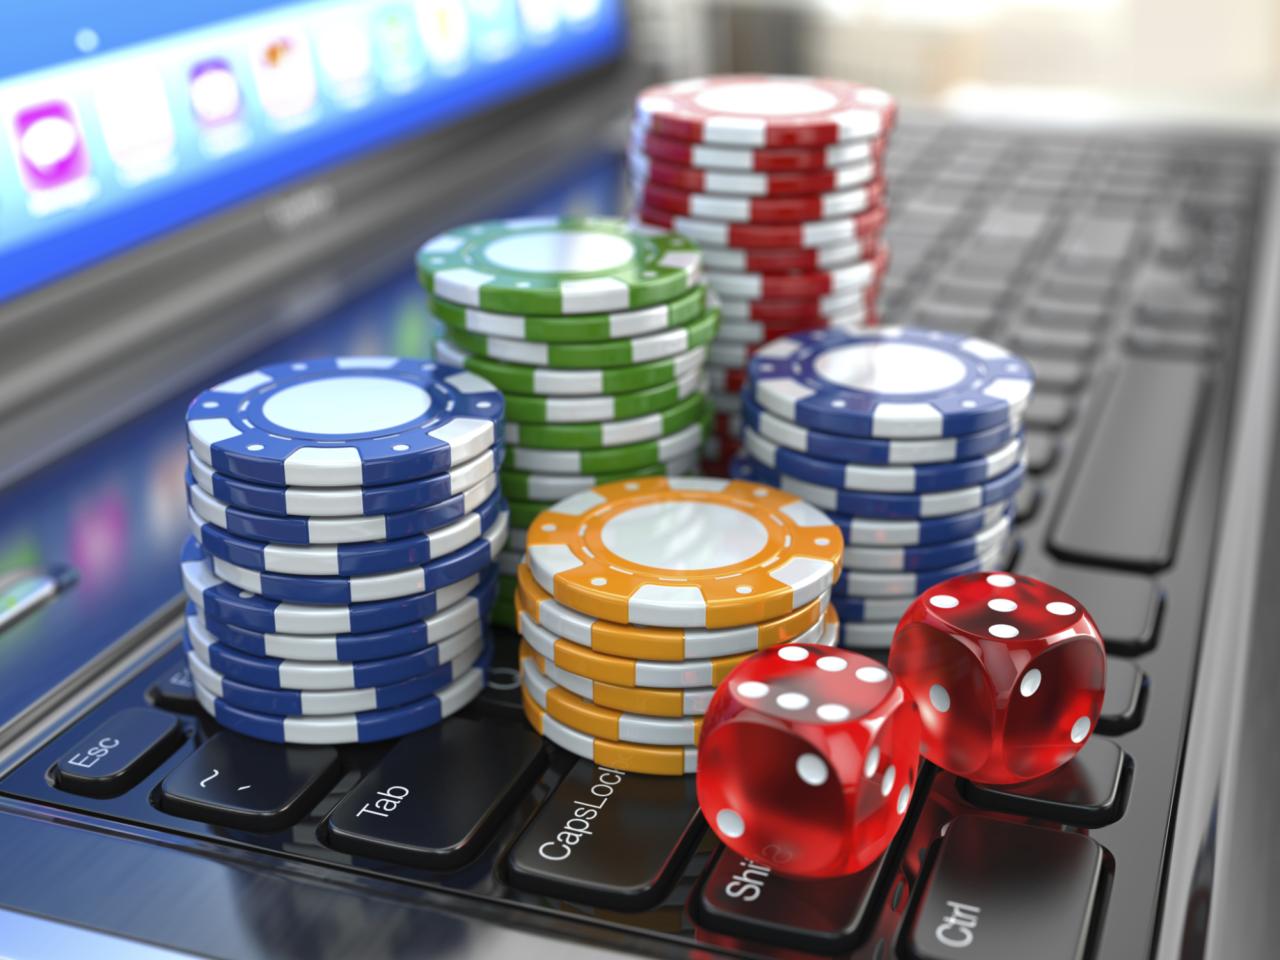 Fedezze fel a Bitdreams Casino világát